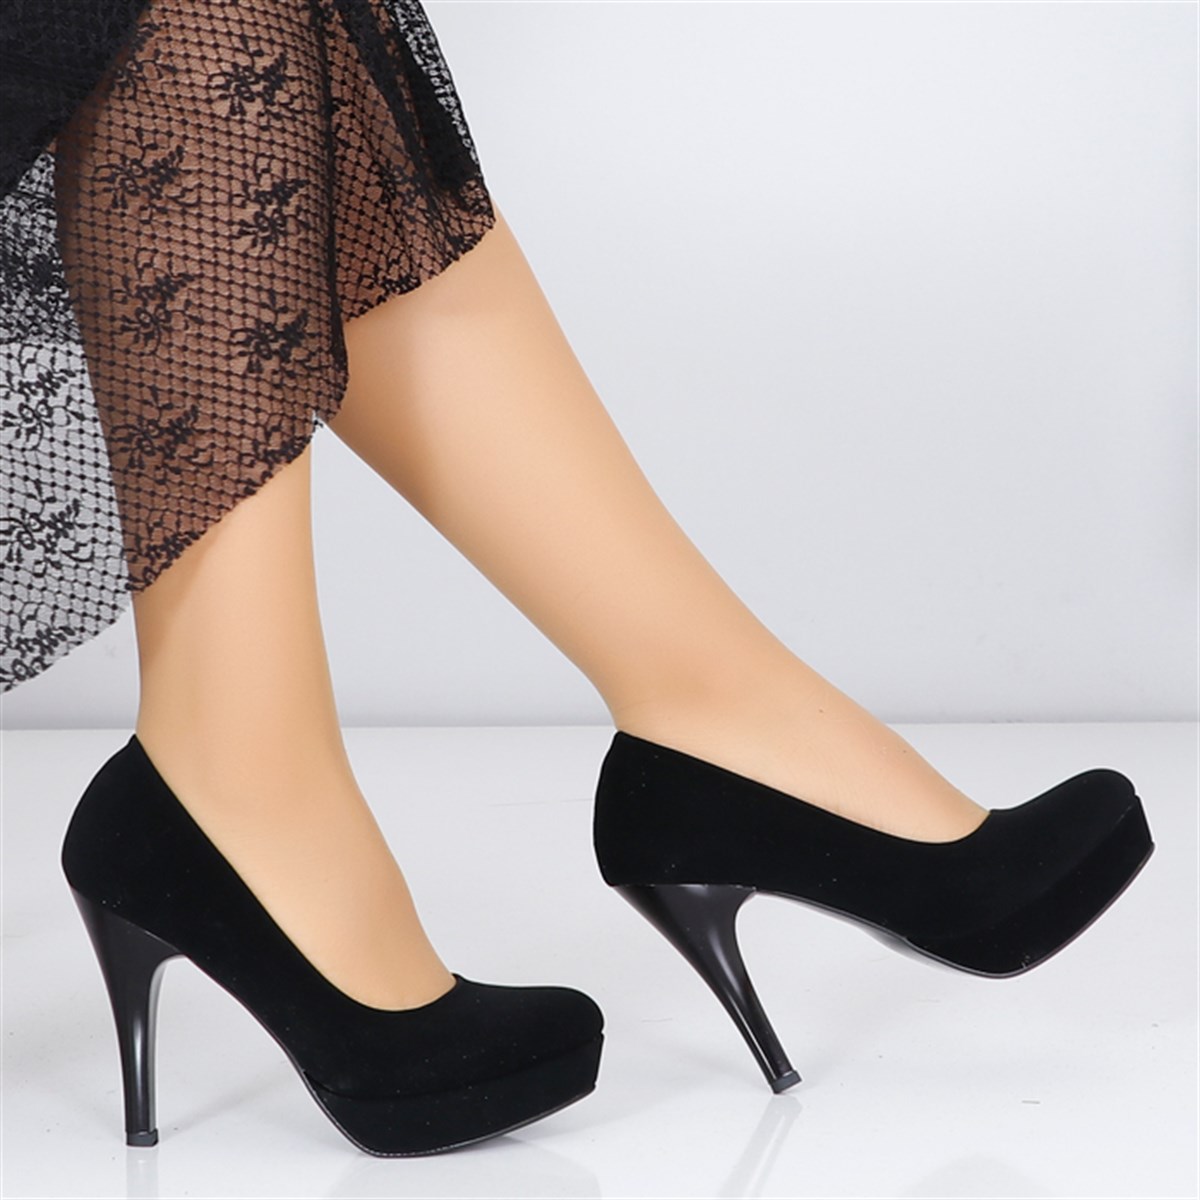 Siyah süet Platform Topuk Kadın Ayakkabı PYTK 20MY Fiyatı ve Modelleri